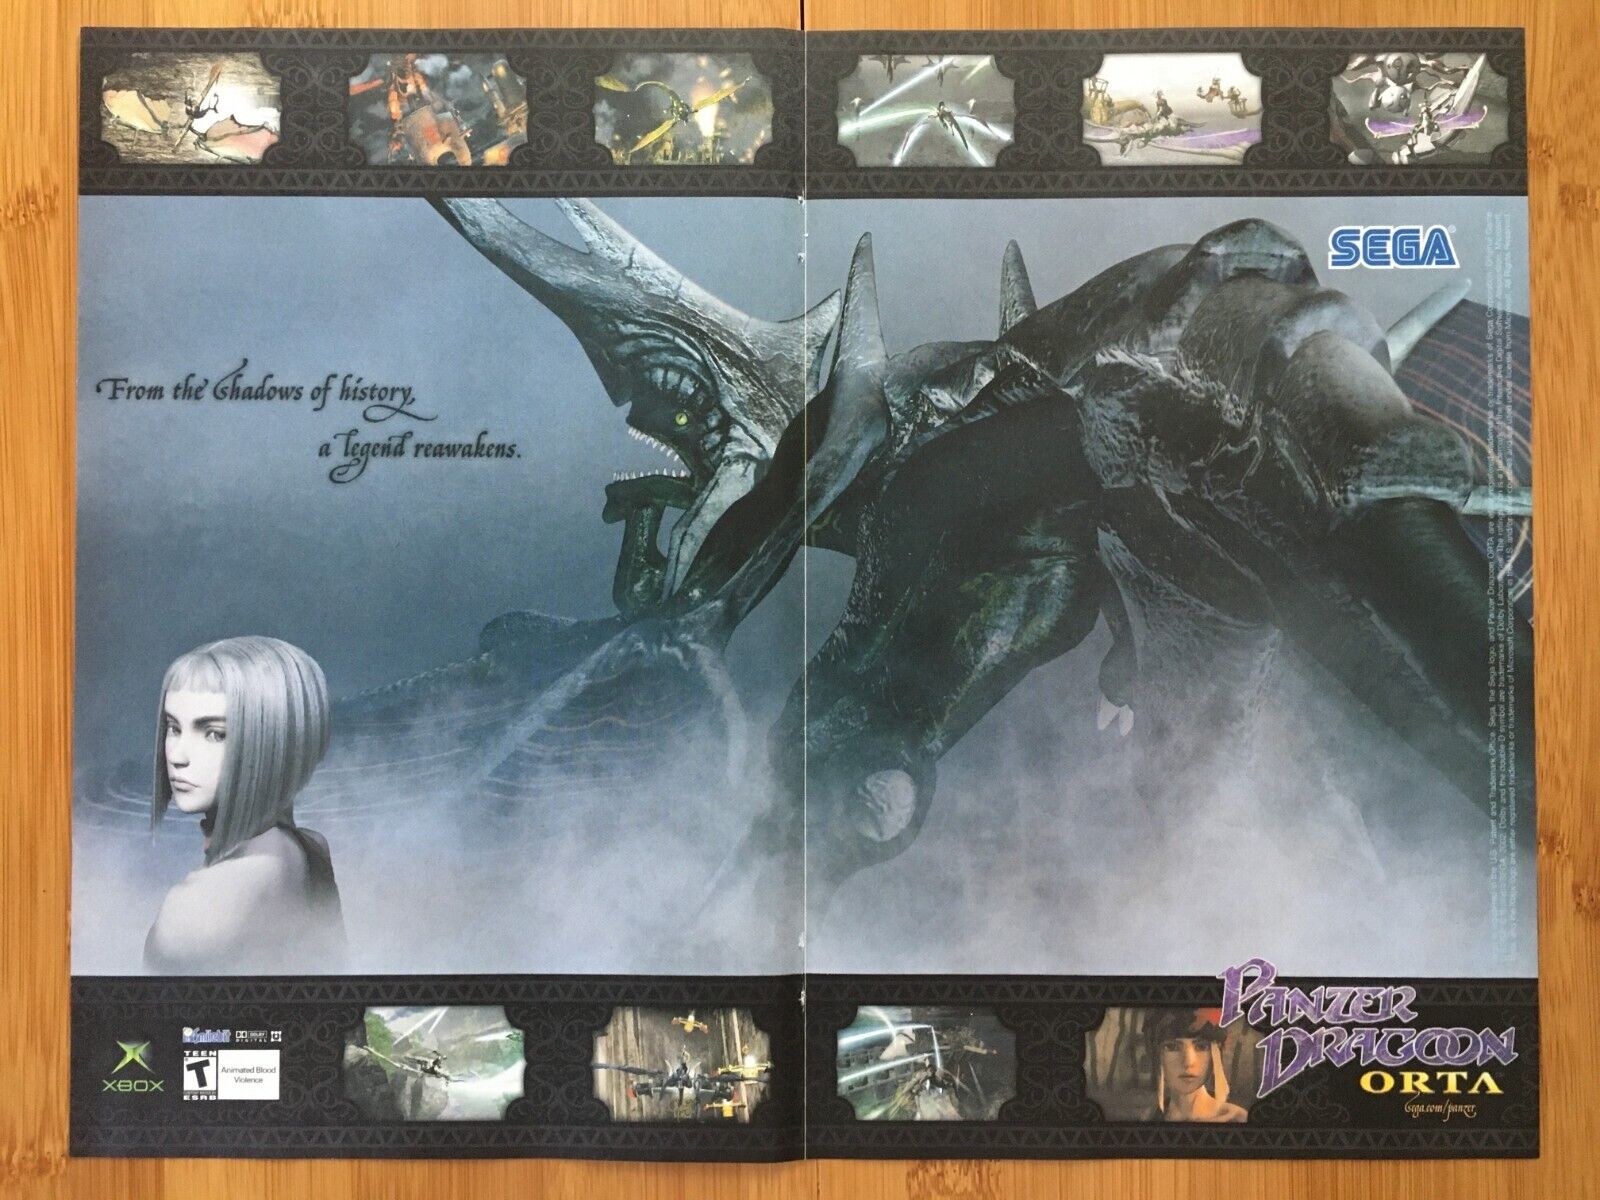 2002 Panzer Dragoon Orta Xbox Vintage Print Ad/Poster Retro Video Game Promo Art